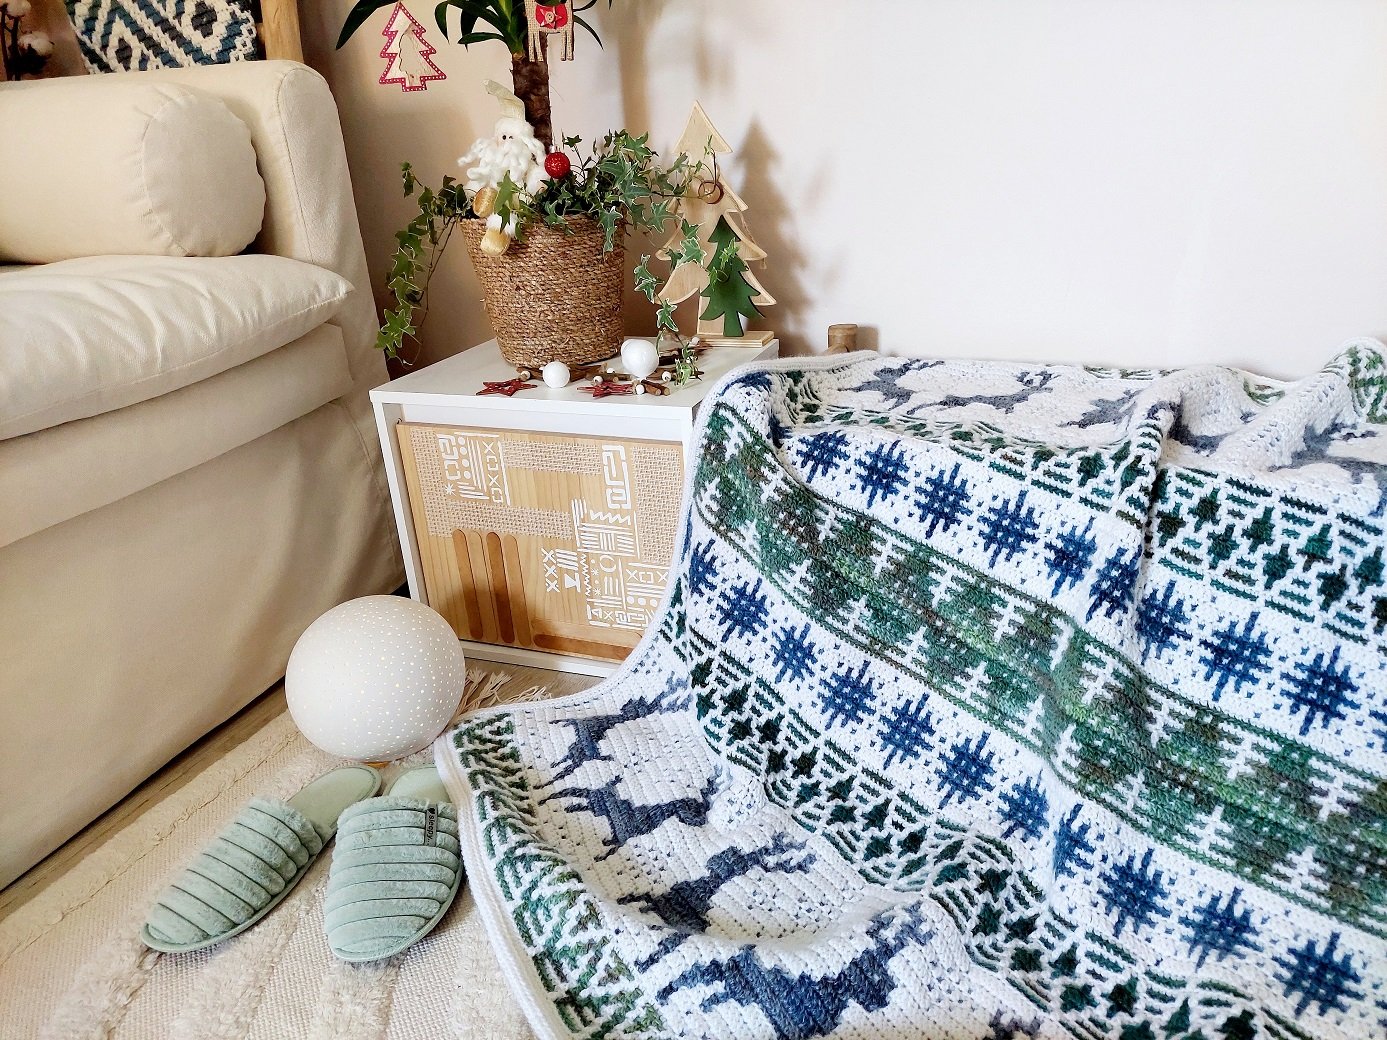 Crochet patterns by BebaBlanket